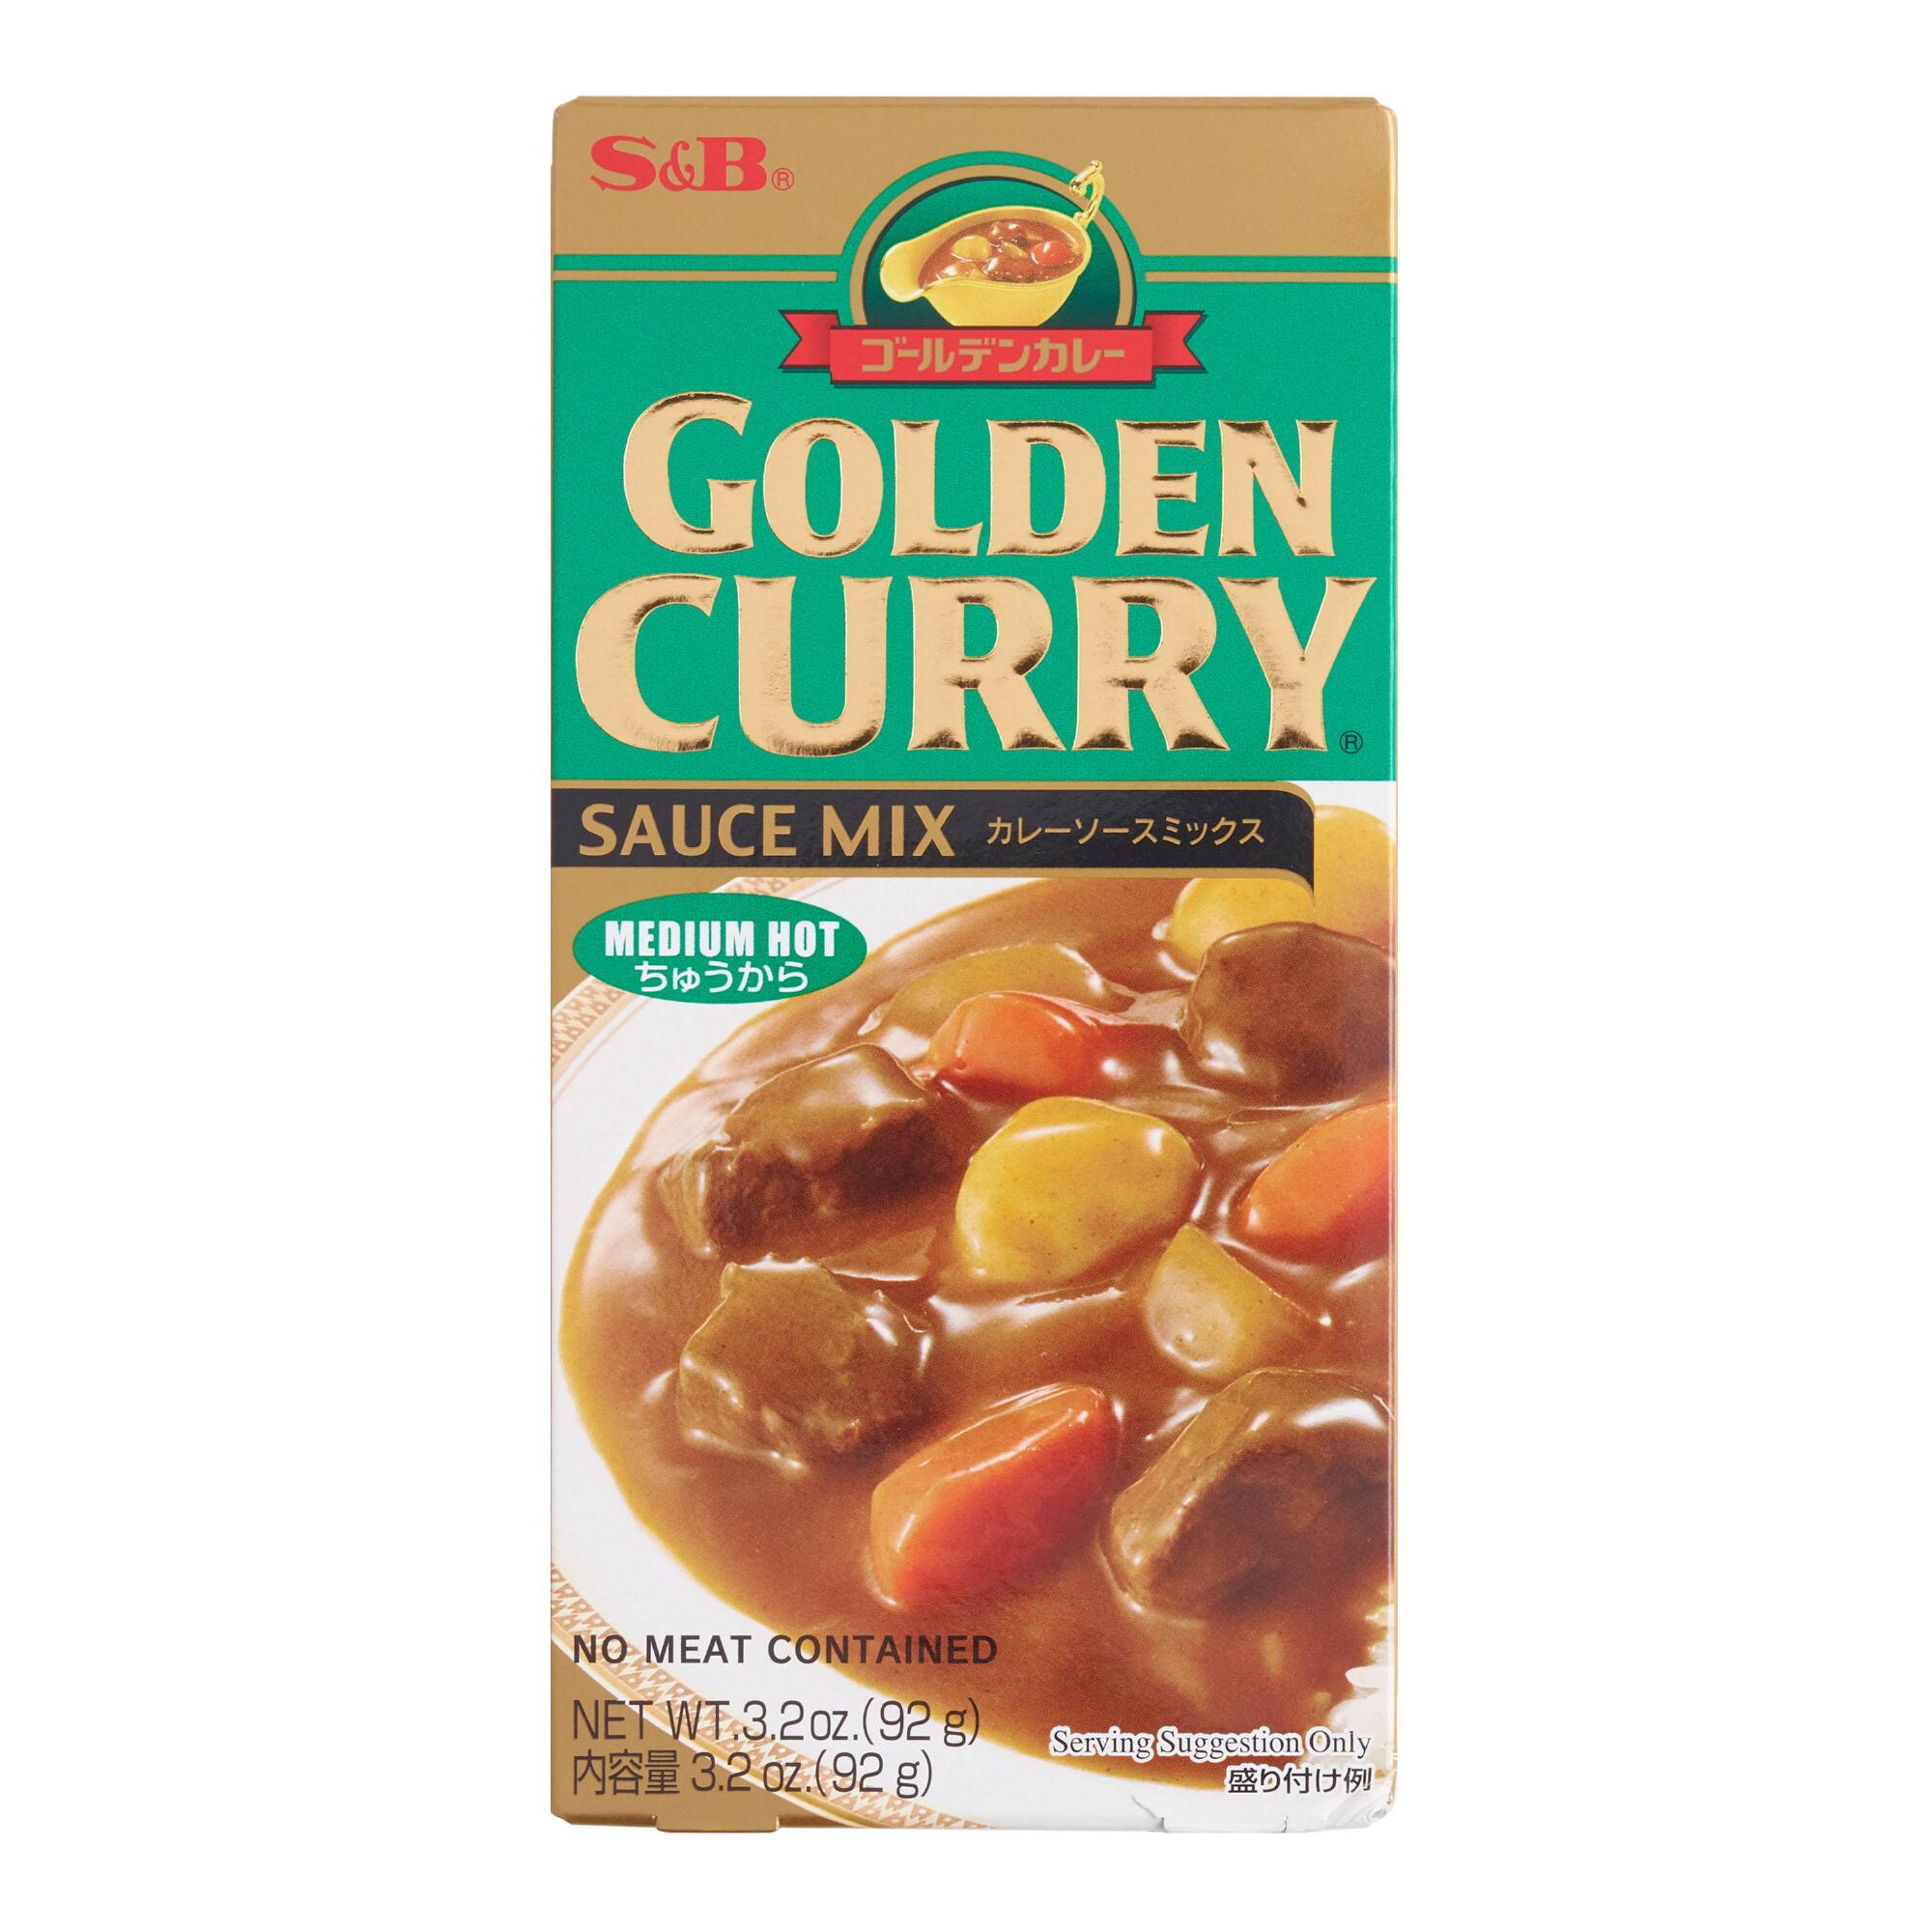 S&B Medium Hot Golden Curry Sauce Mix Set of 2 by World Market